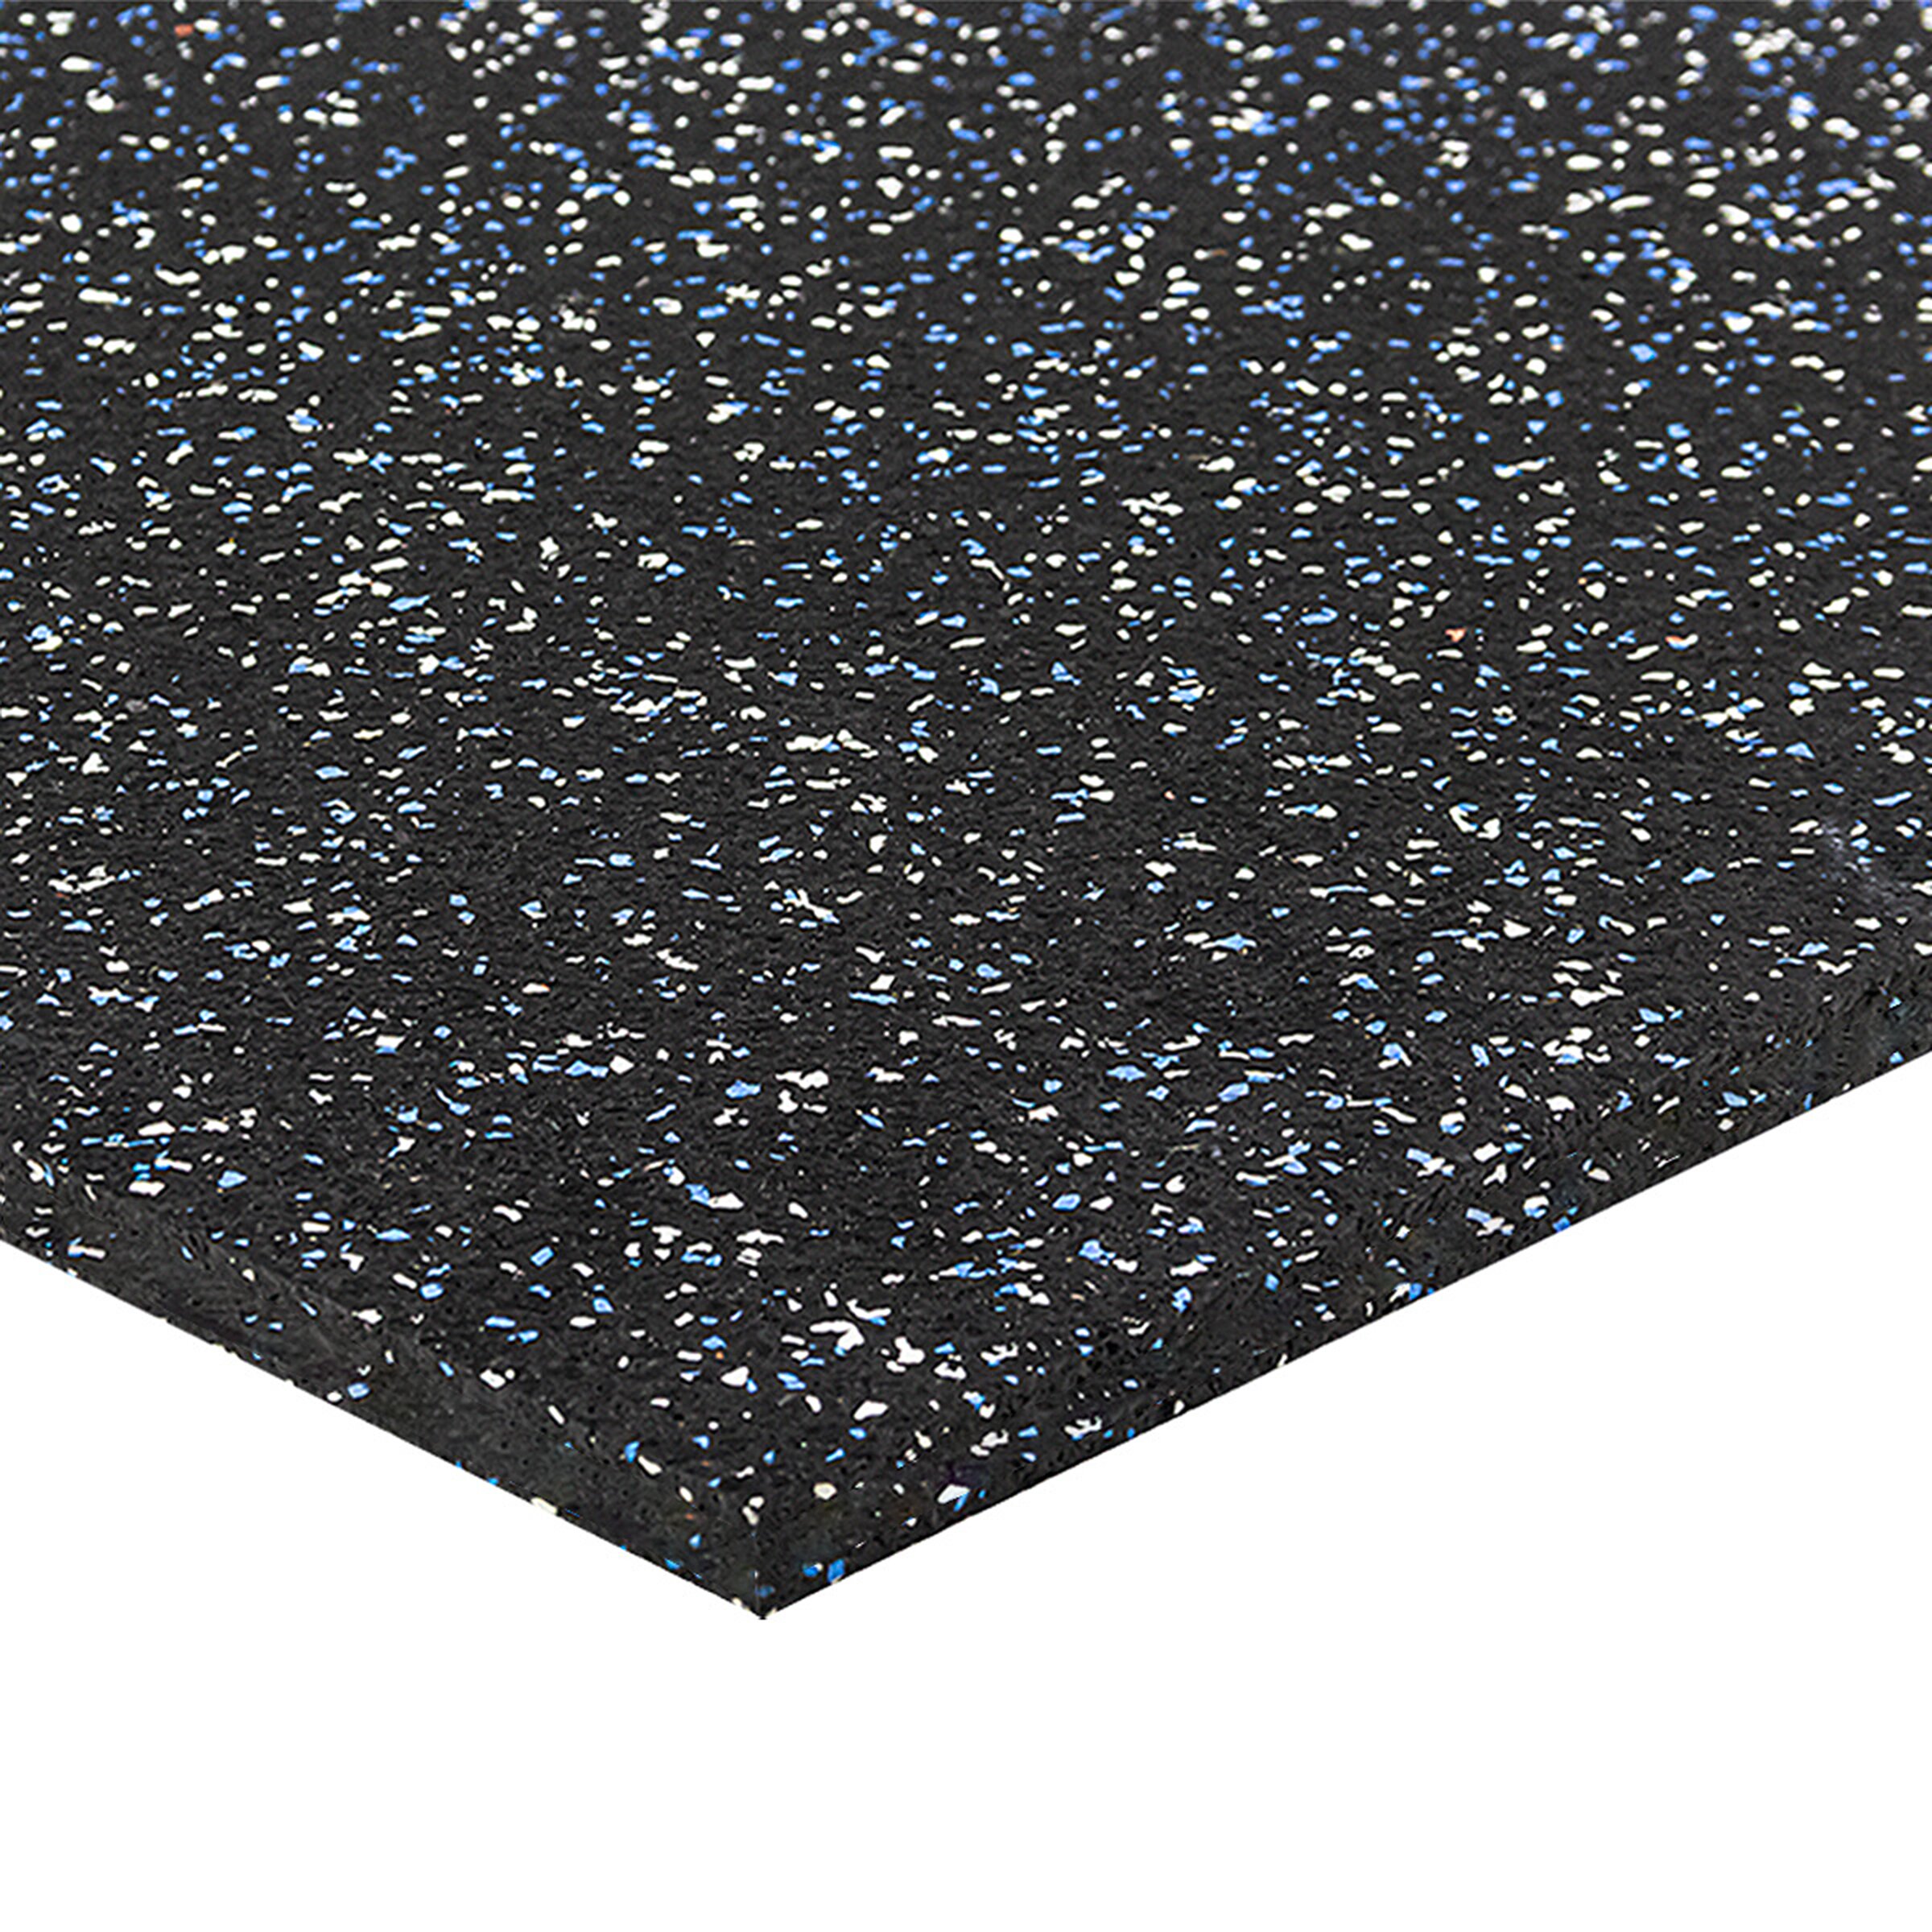 Černo-bílo-modrá gumová modulová puzzle dlažba FLOMA FitFlo SF1050 - délka 50 cm, šířka 50 cm, výška 1,6 cm